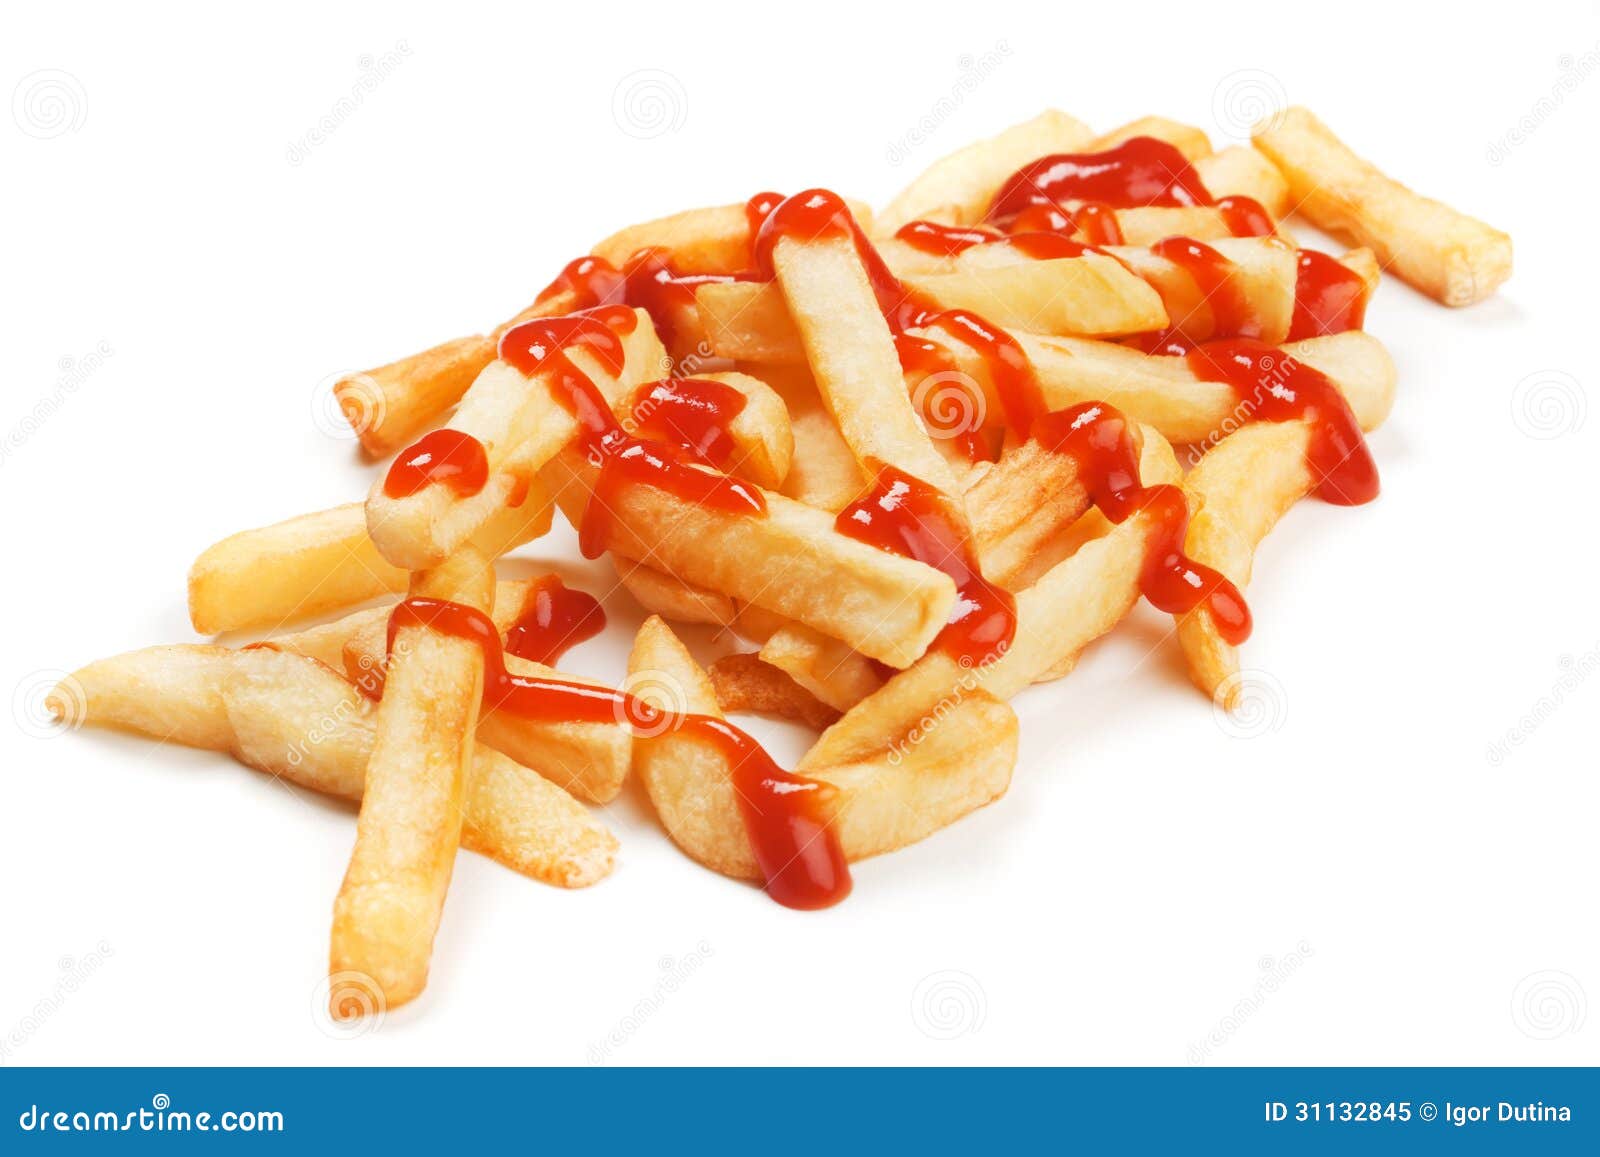 炸薯条&番茄酱 库存照片. 图片 包括有 番茄酱, 细菌学, 快餐, 法国, 不健康, 没人, 快速, 油炸物 - 25813516